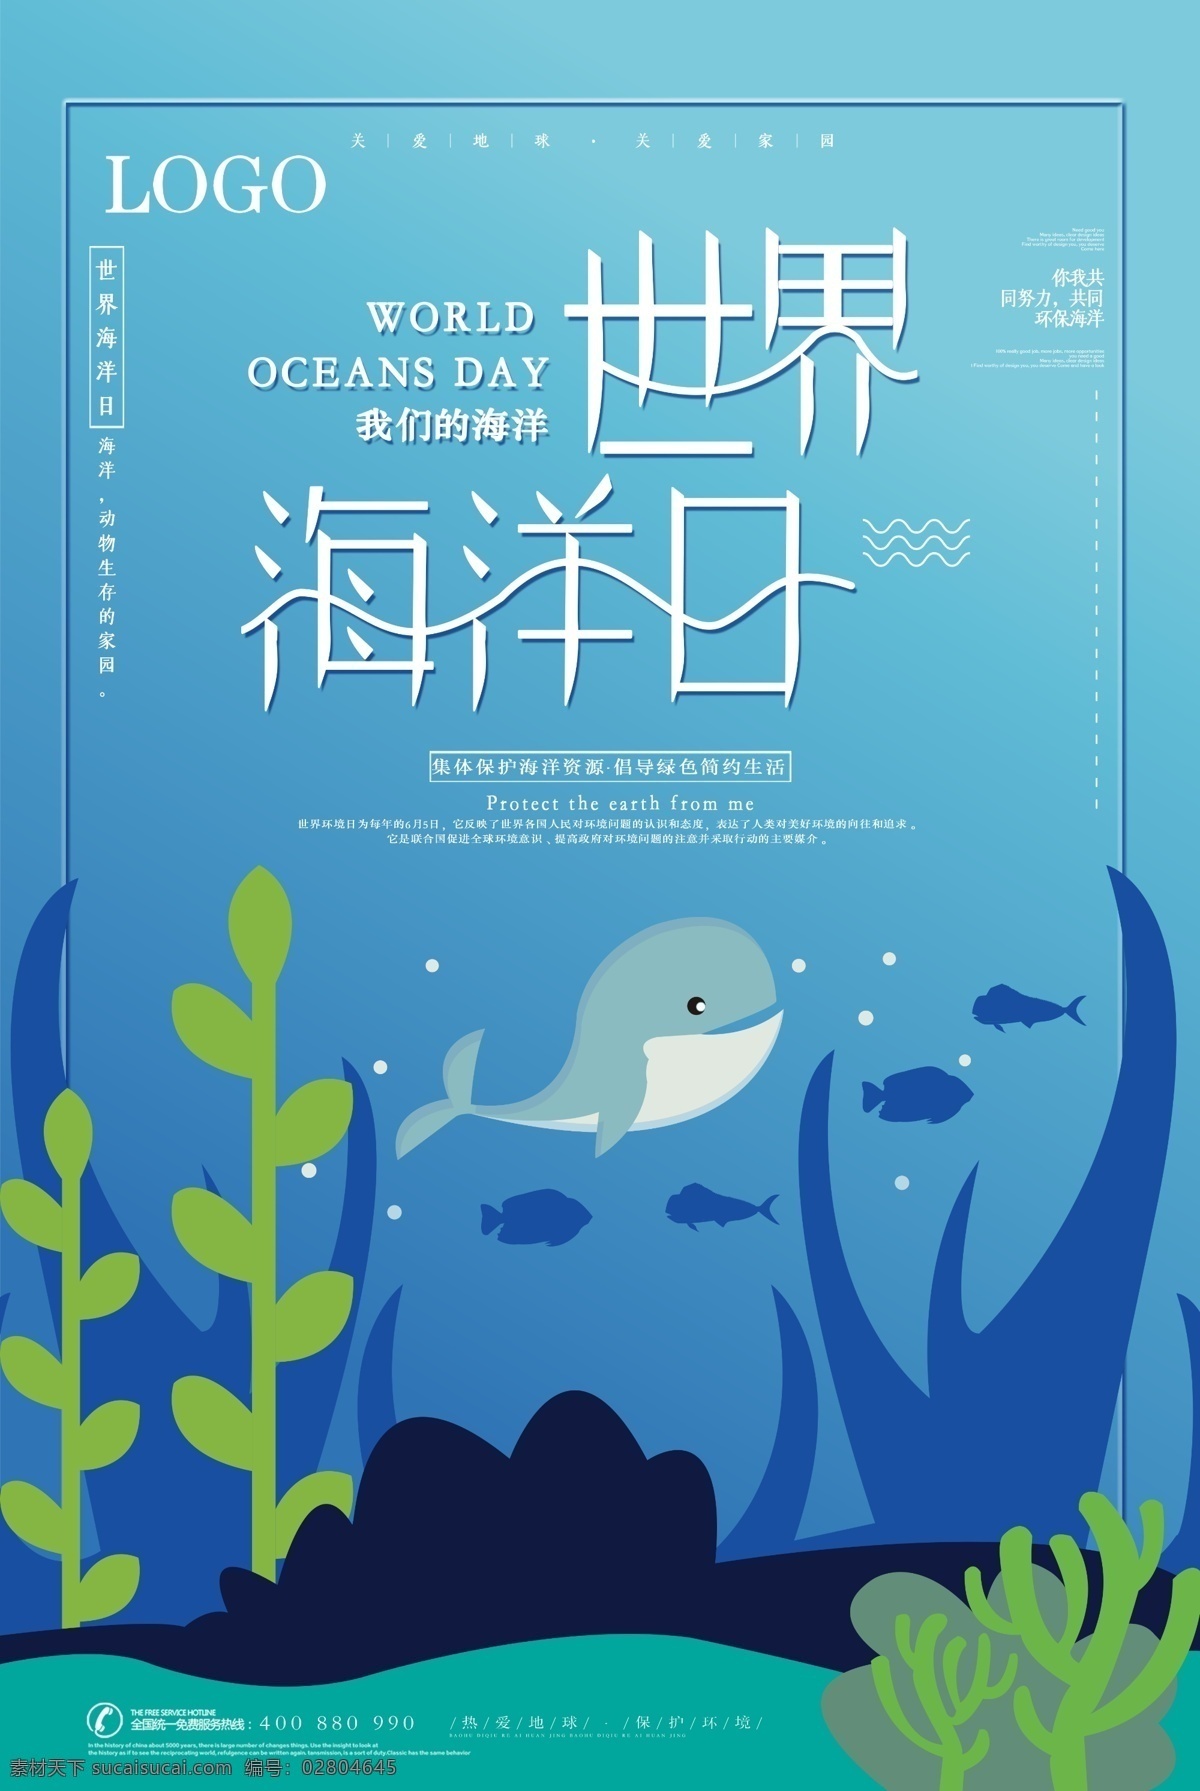 世界 海洋 日 海报 世界海洋日 蓝色海洋 鲸鱼 保护海洋 保护环境 公益海报